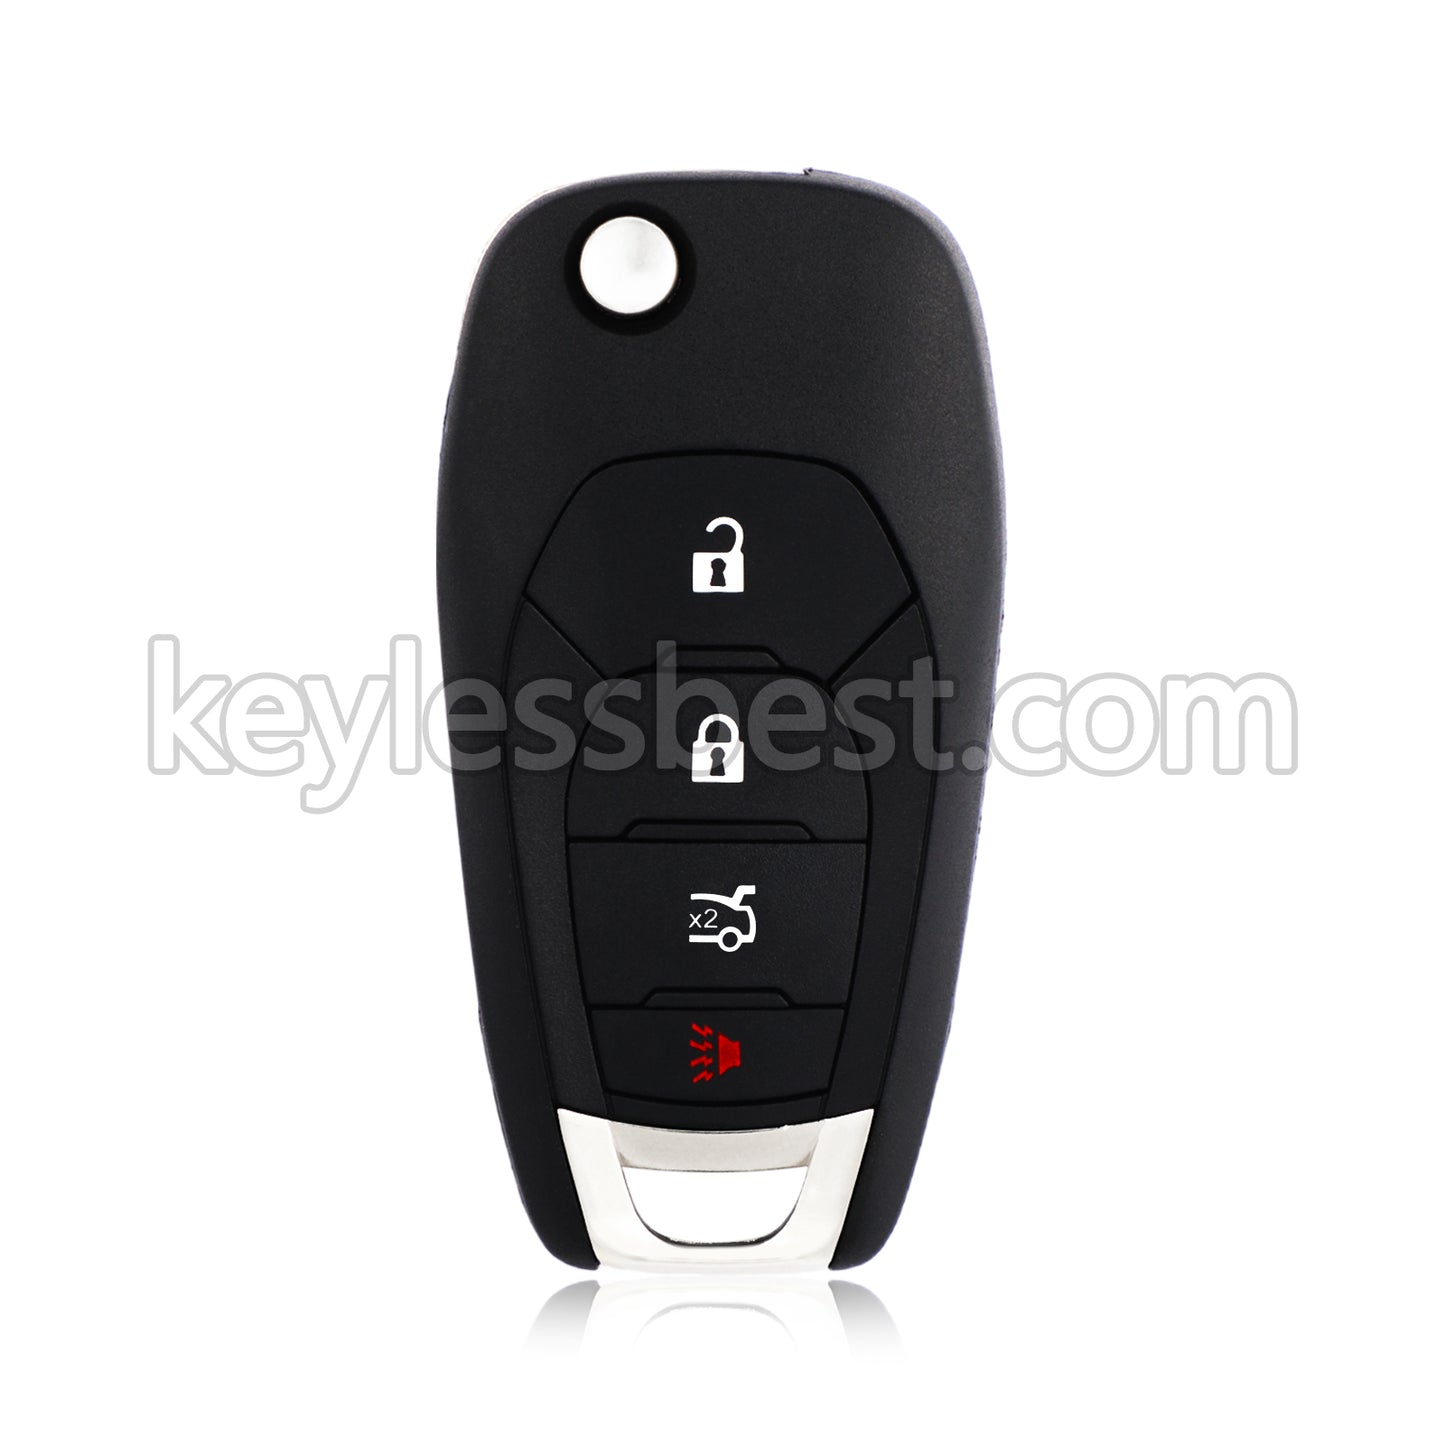 2016 - 2020 Chevrolet Cruze Sonic / 5 Buttons Remote Key / LXP-T003 / 315MHz